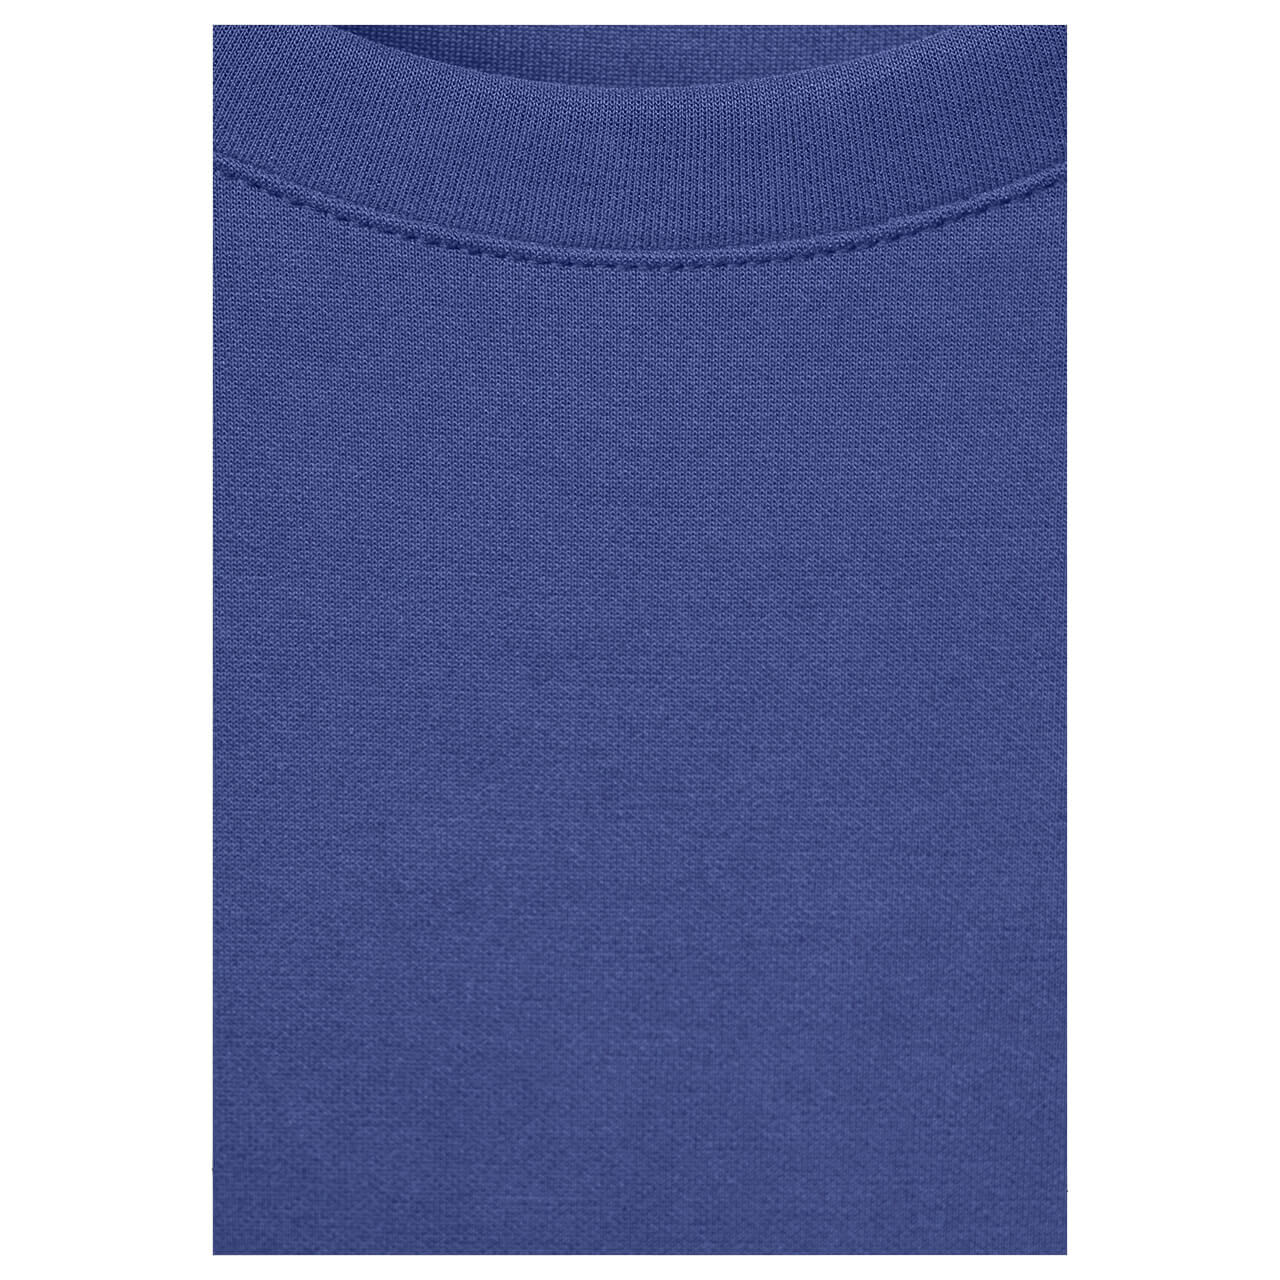 Street One Damen T-Shirt Silk Look intense royal blue